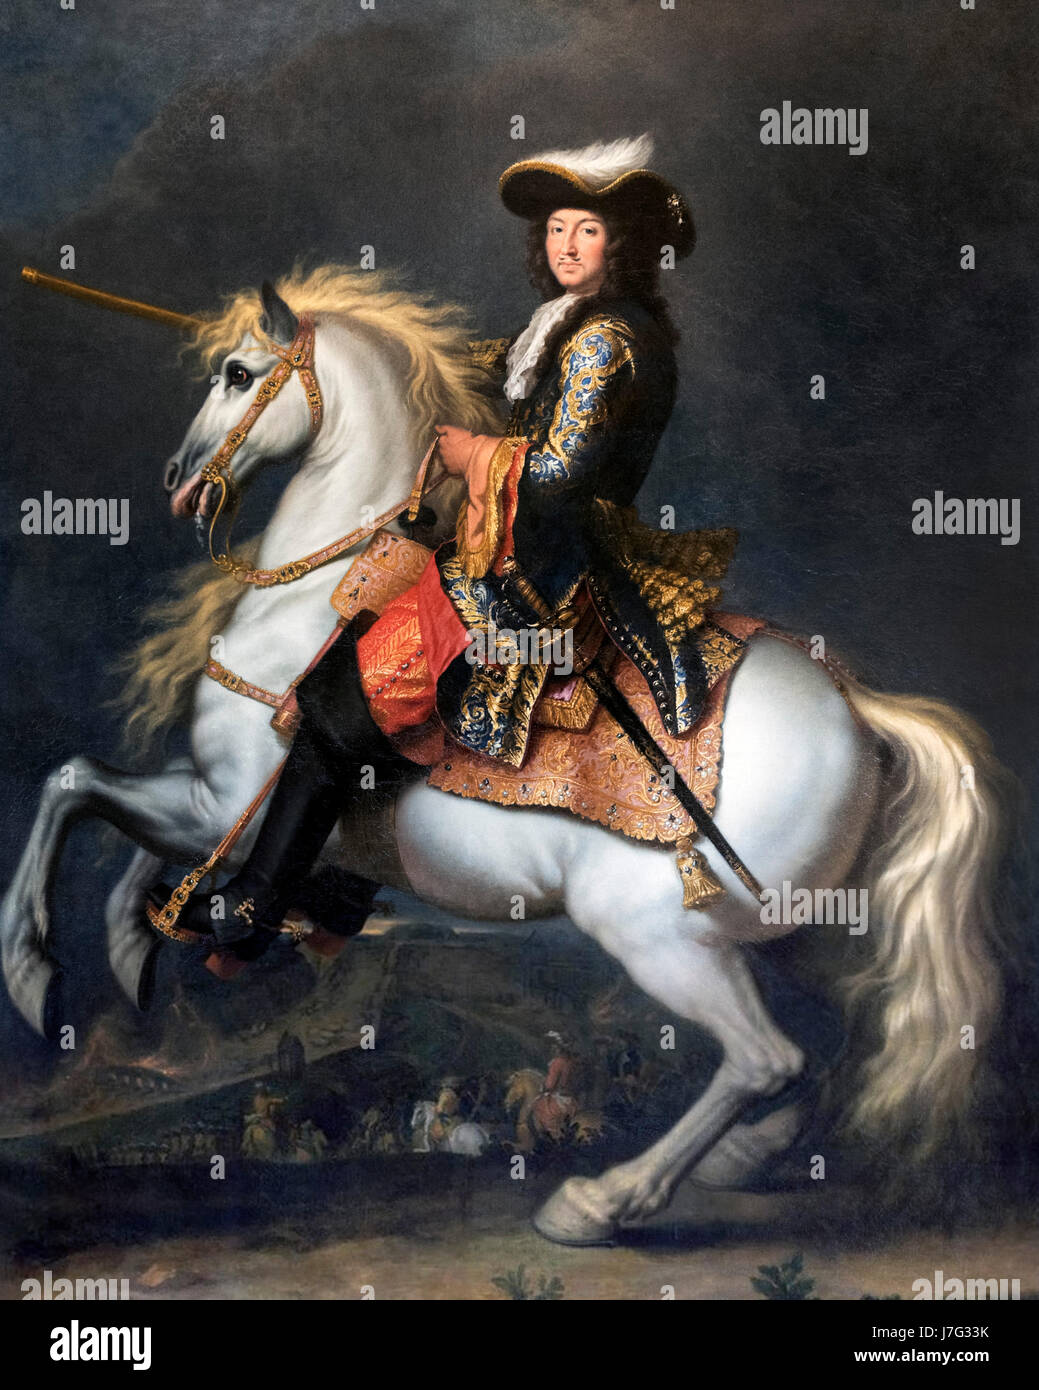 Ritratto di Re Luigi XIV di Francia (1638-1715) a cavallo, Rene-Antoine Houasse, olio su tela, 1674 Foto Stock